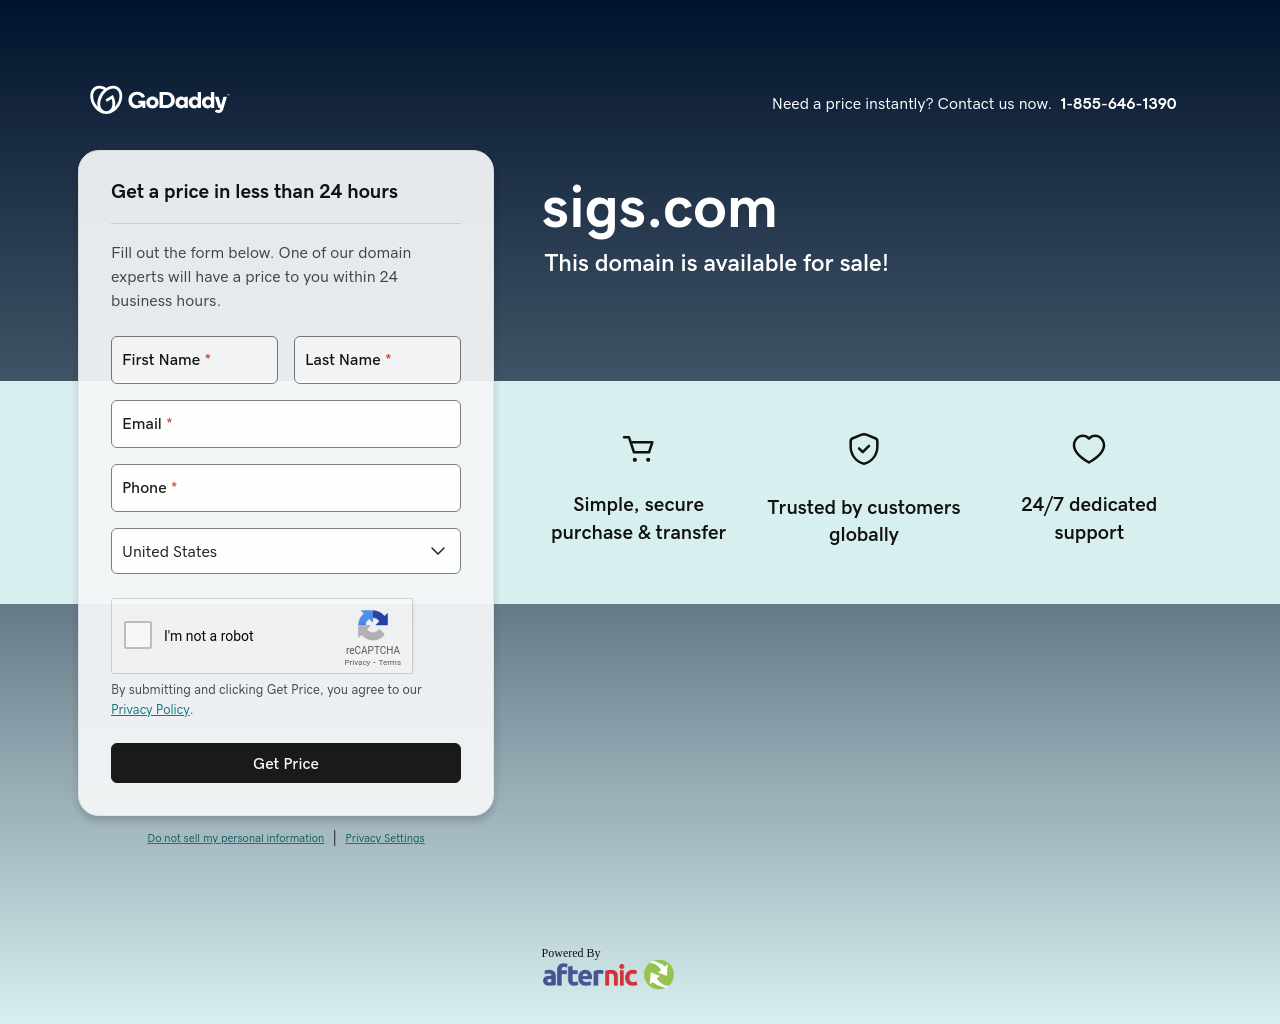 sigs.com